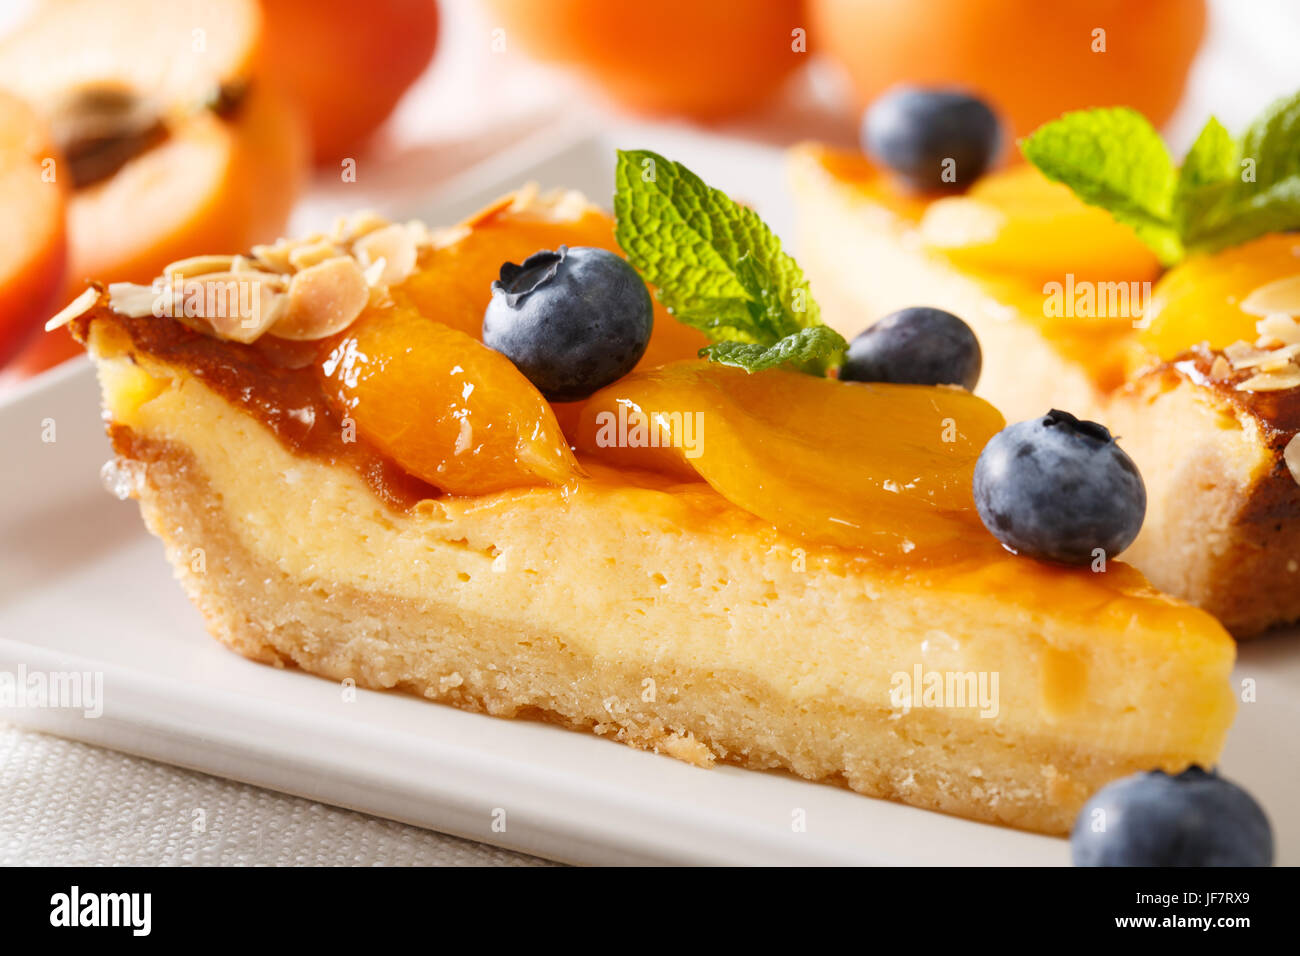 Un bel dessert: una cheesecake con albicocche, mirtilli e mandorle close-up su una piastra orizzontale. Foto Stock